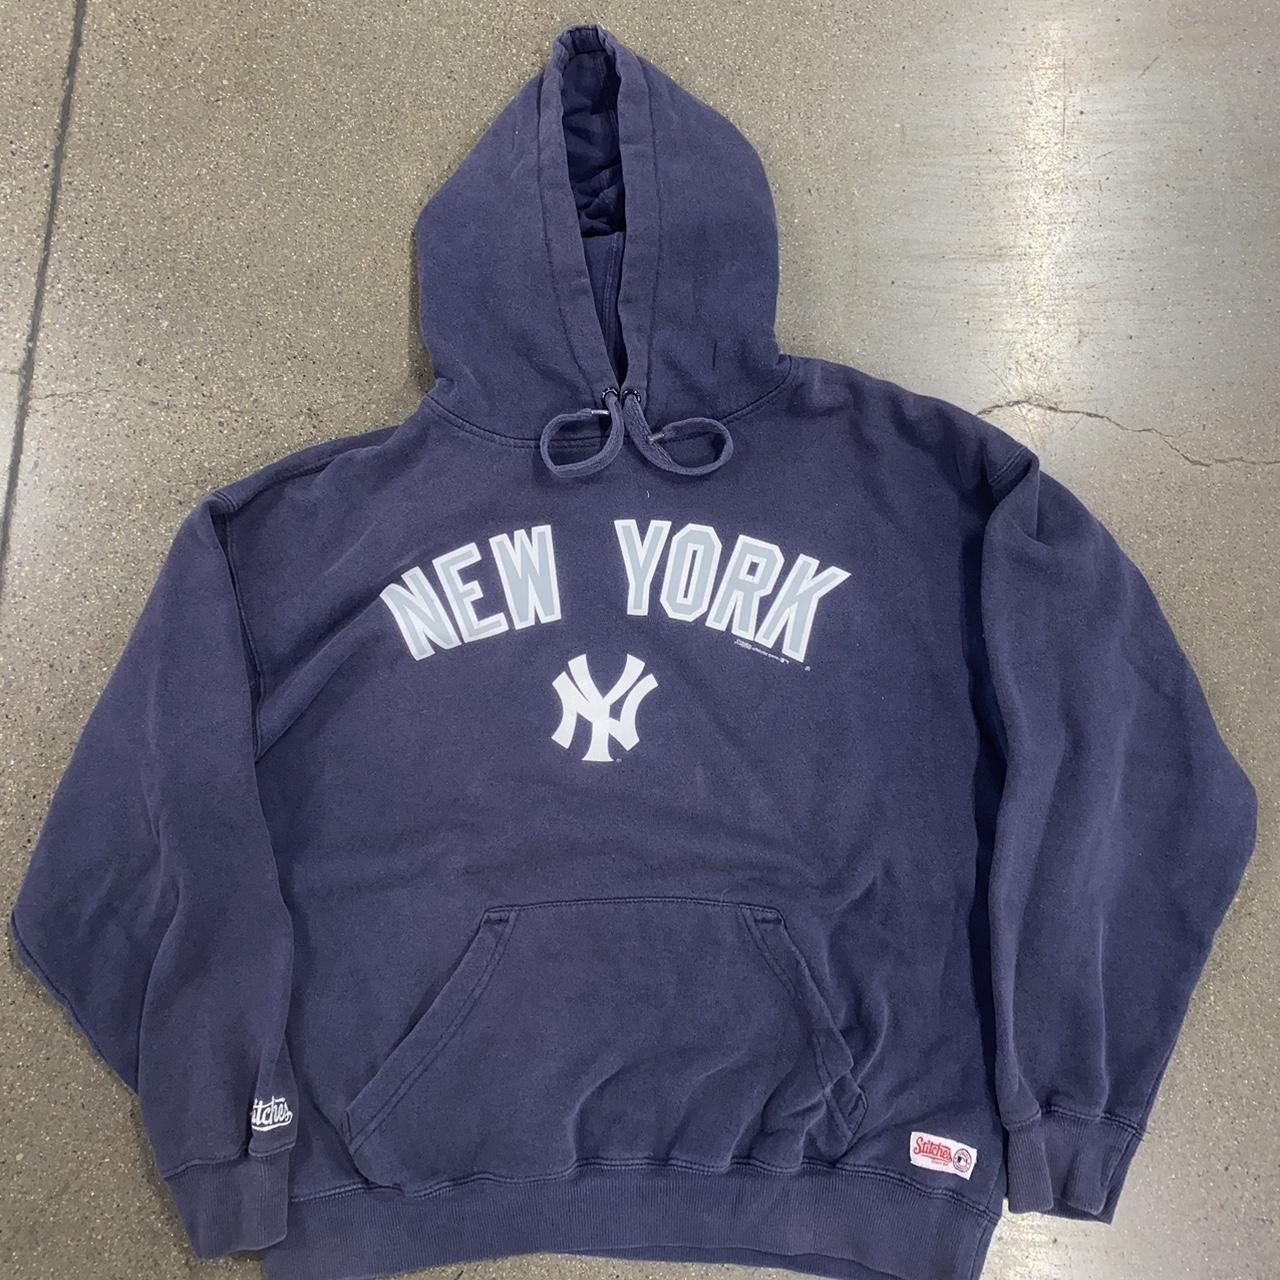 Vintage Stitches MLB New York Yankees Hoodies in... - Depop